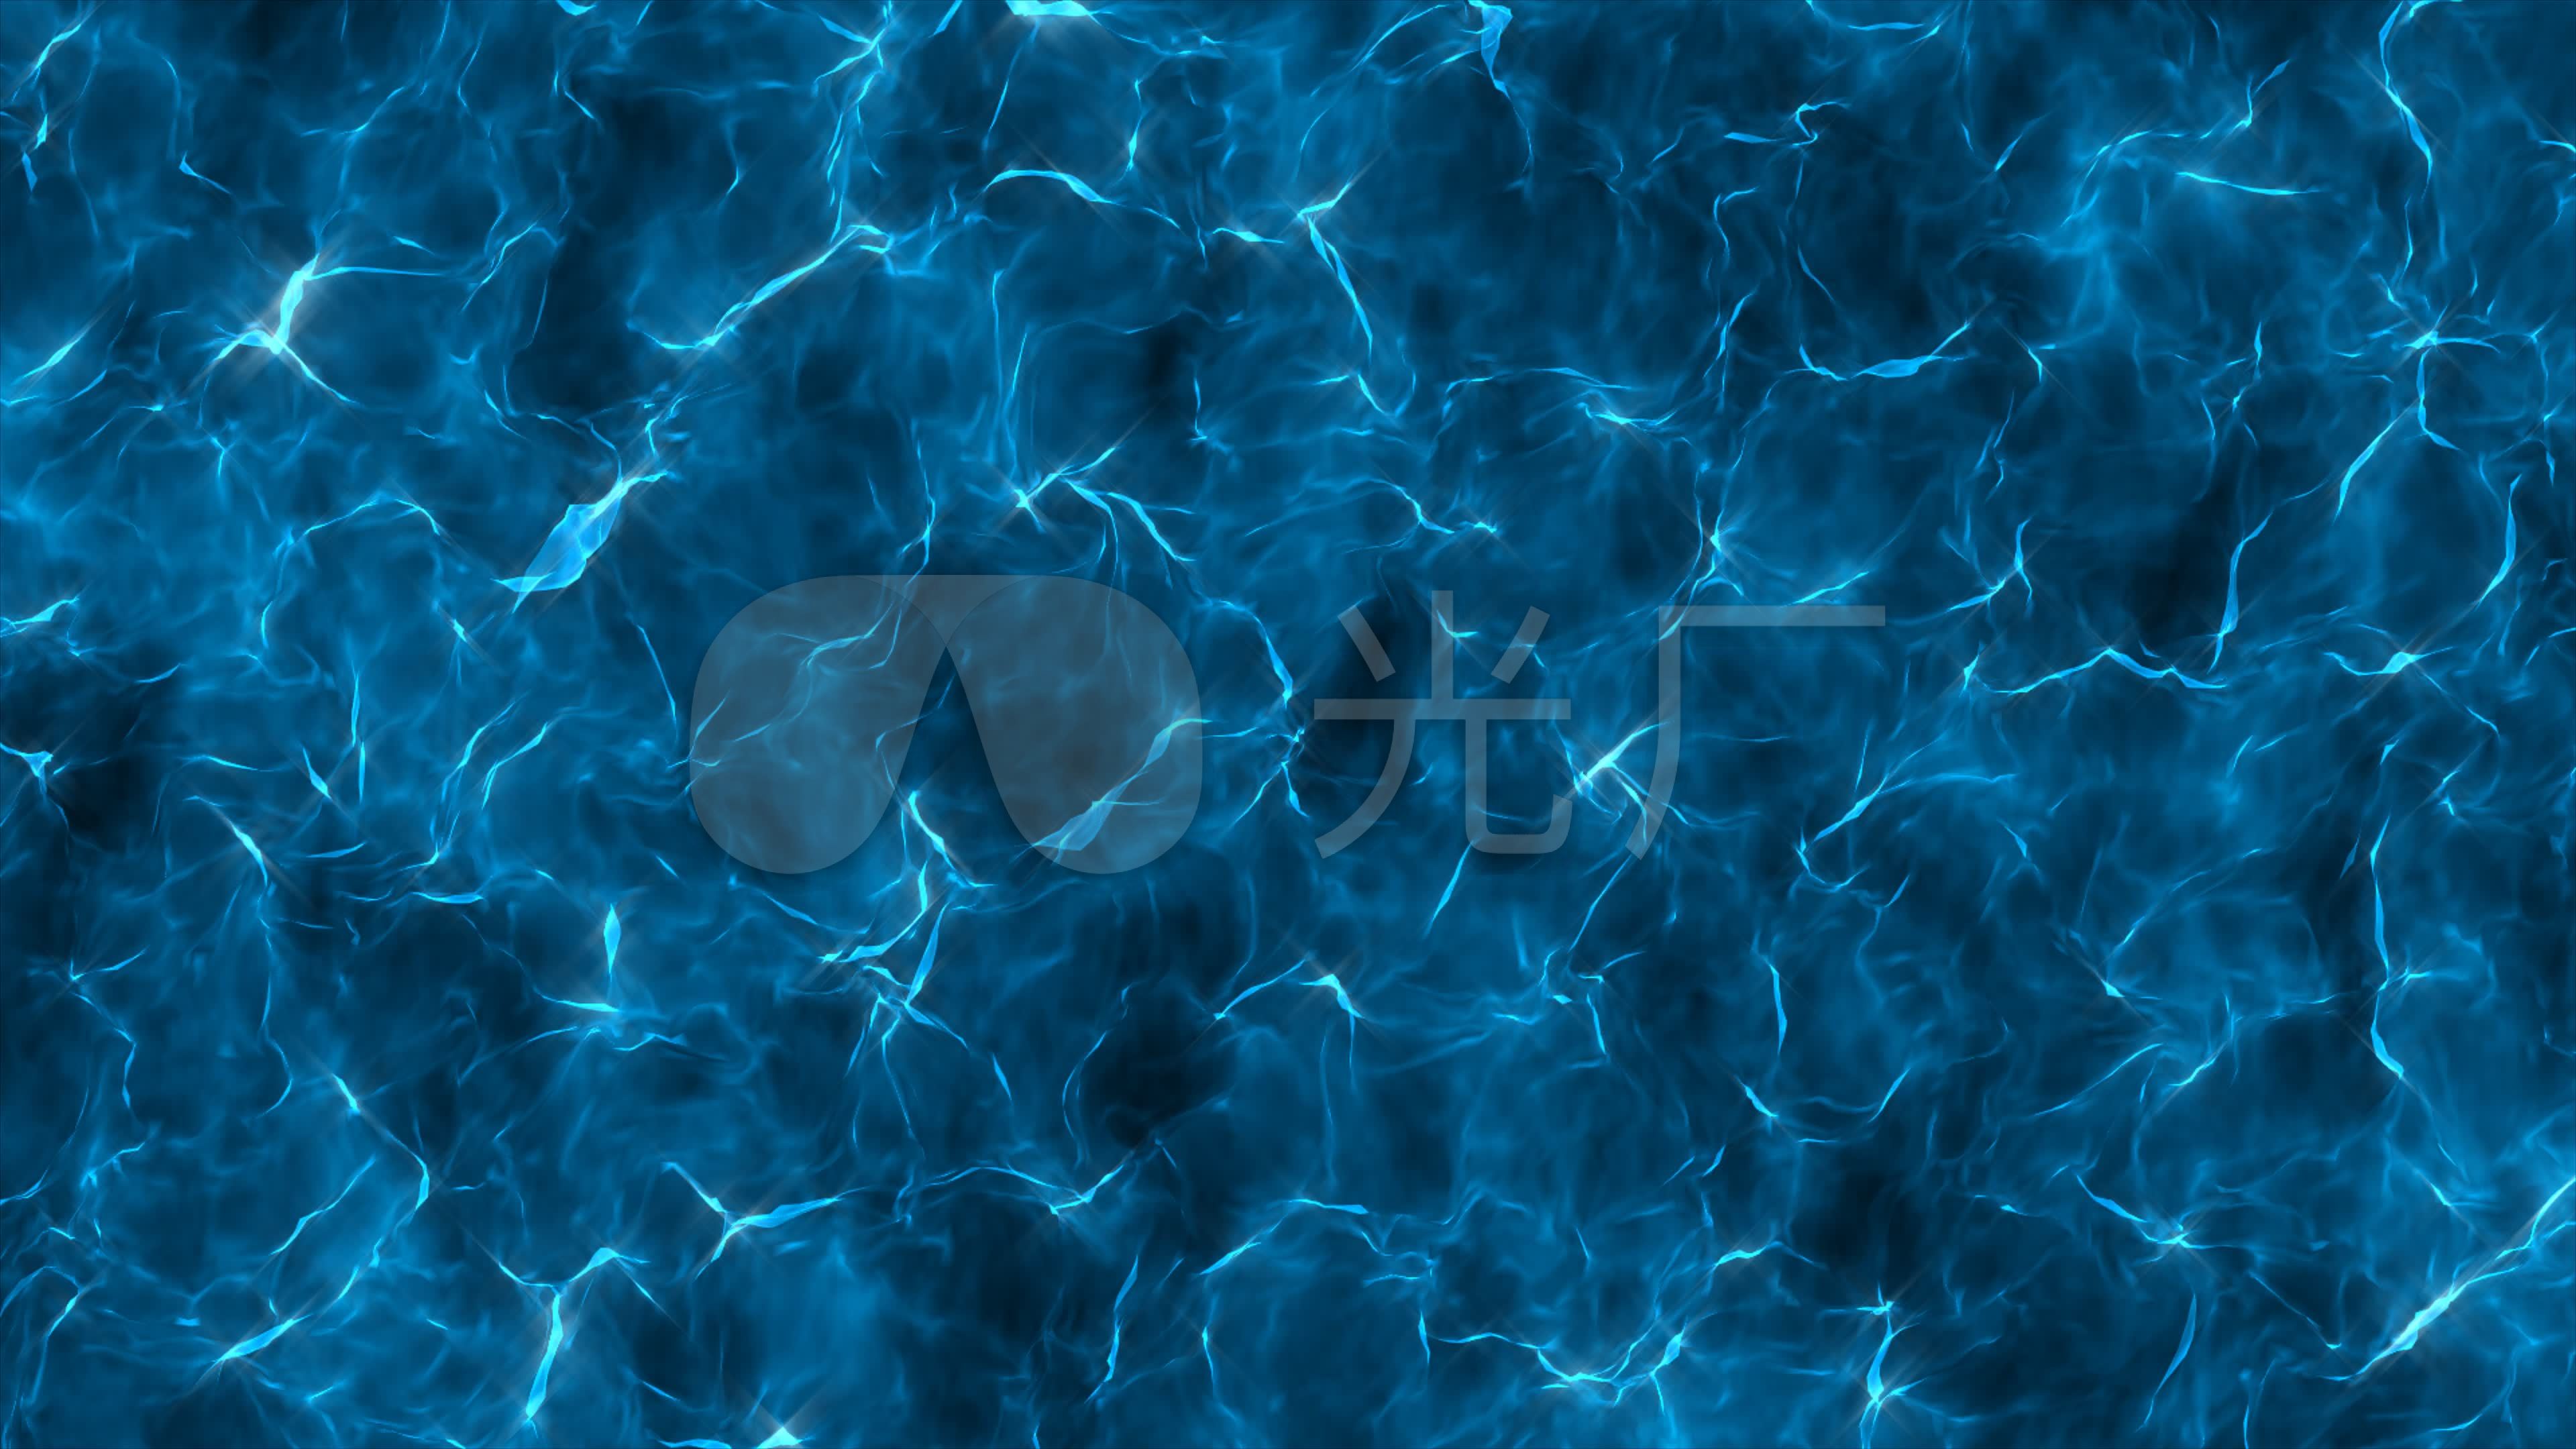 青い水の波紋イラスト画像とPSDフリー素材透過の無料ダウンロード - Pngtree